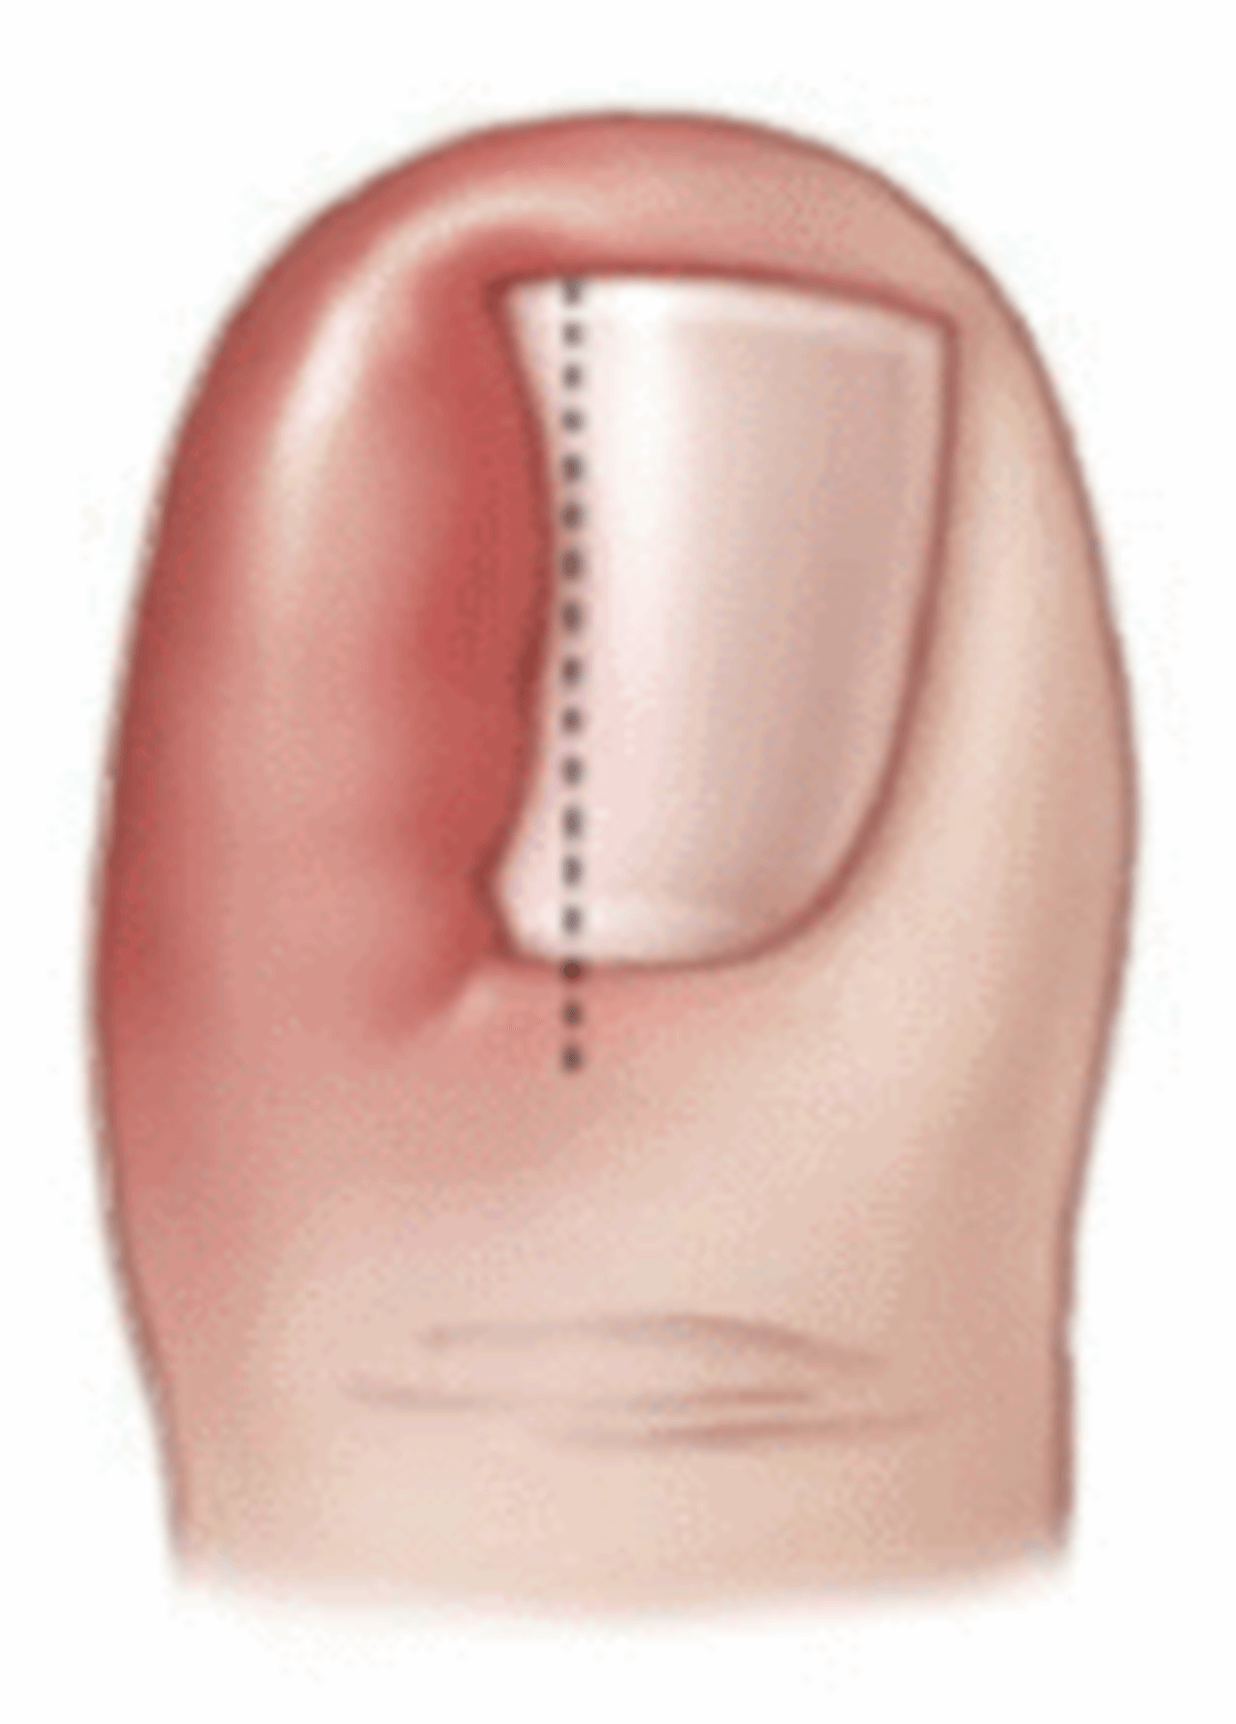 О процедуре с ногтями | memorial sloan kettering cancer center